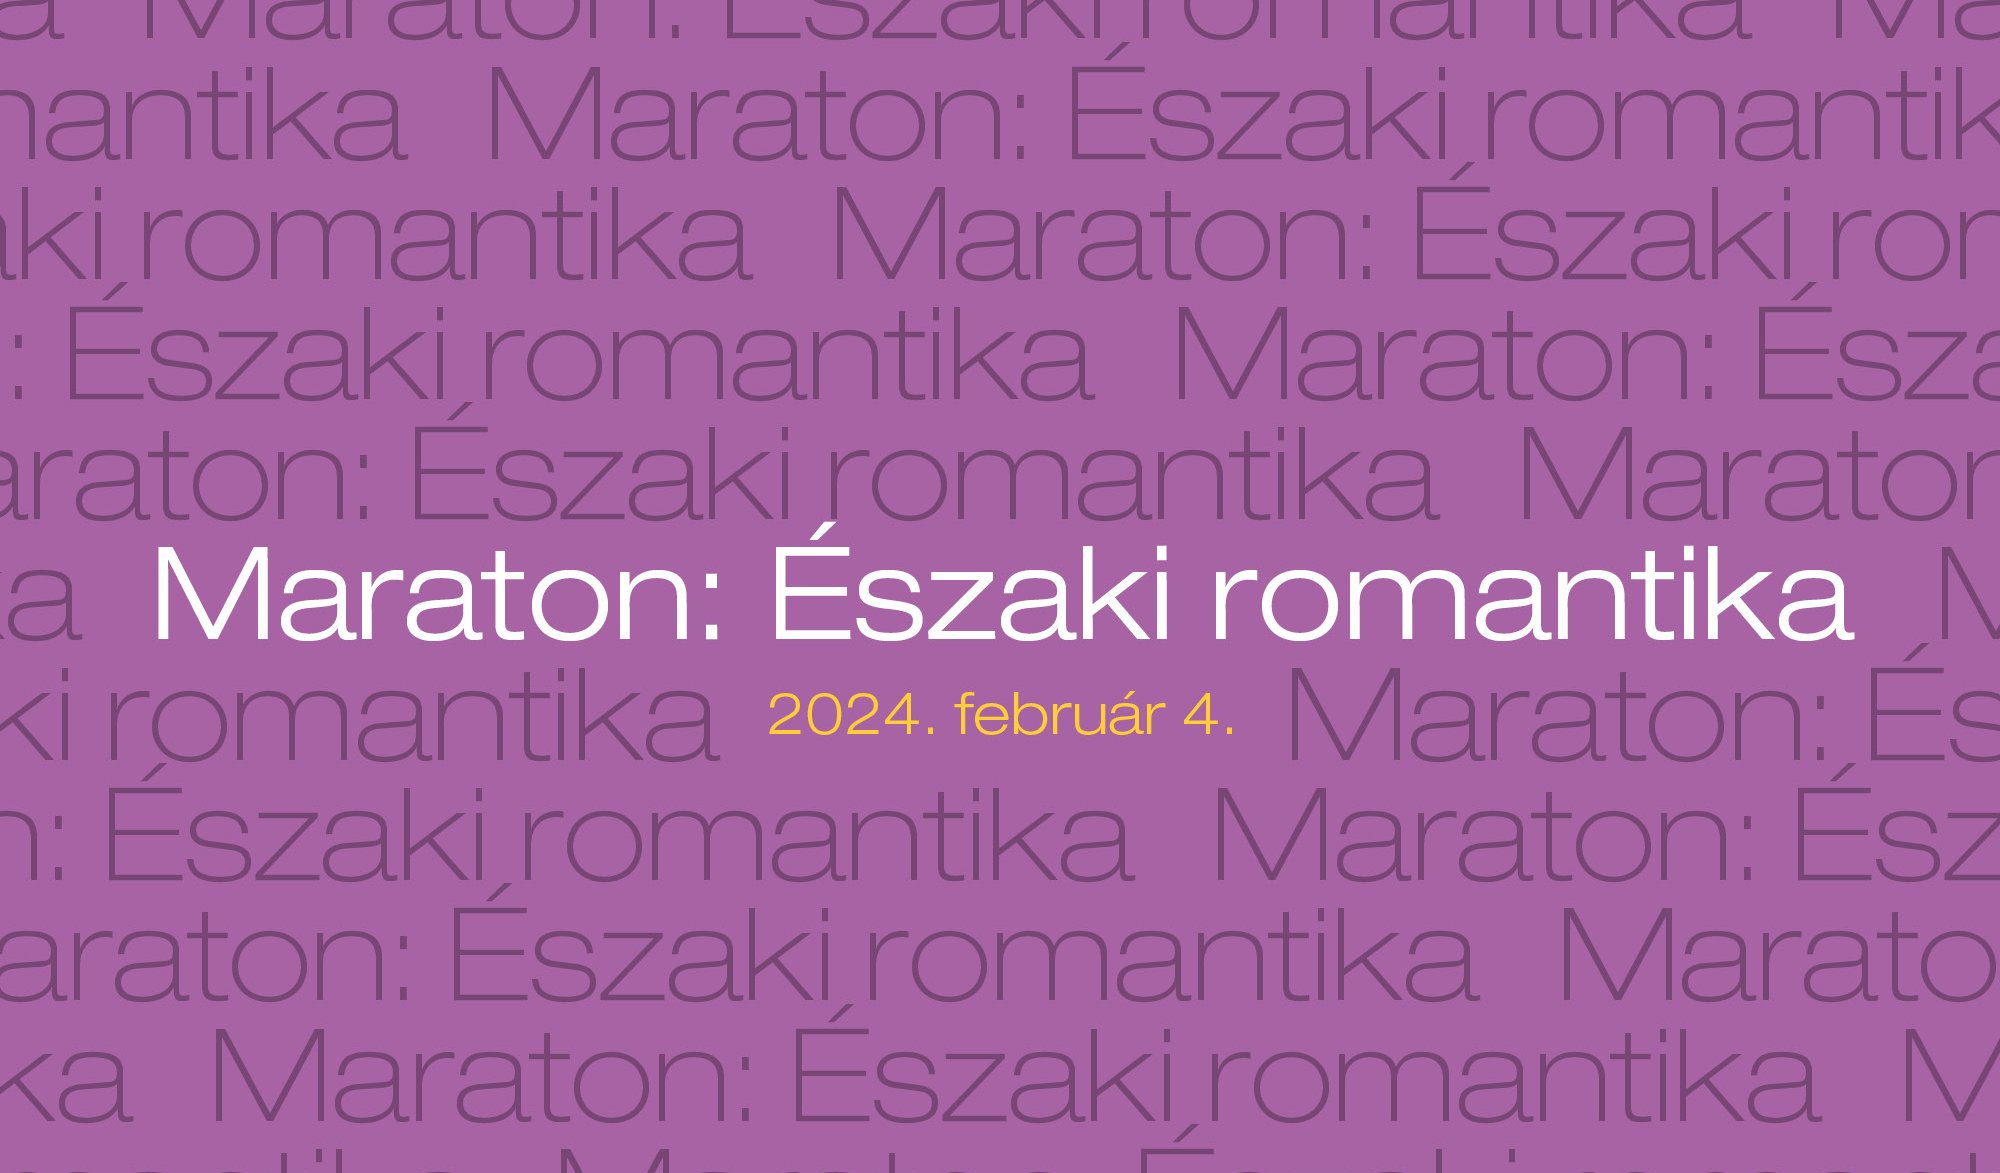 Maraton-Eszaki_romantika-honlap-2000x1300px.jpg